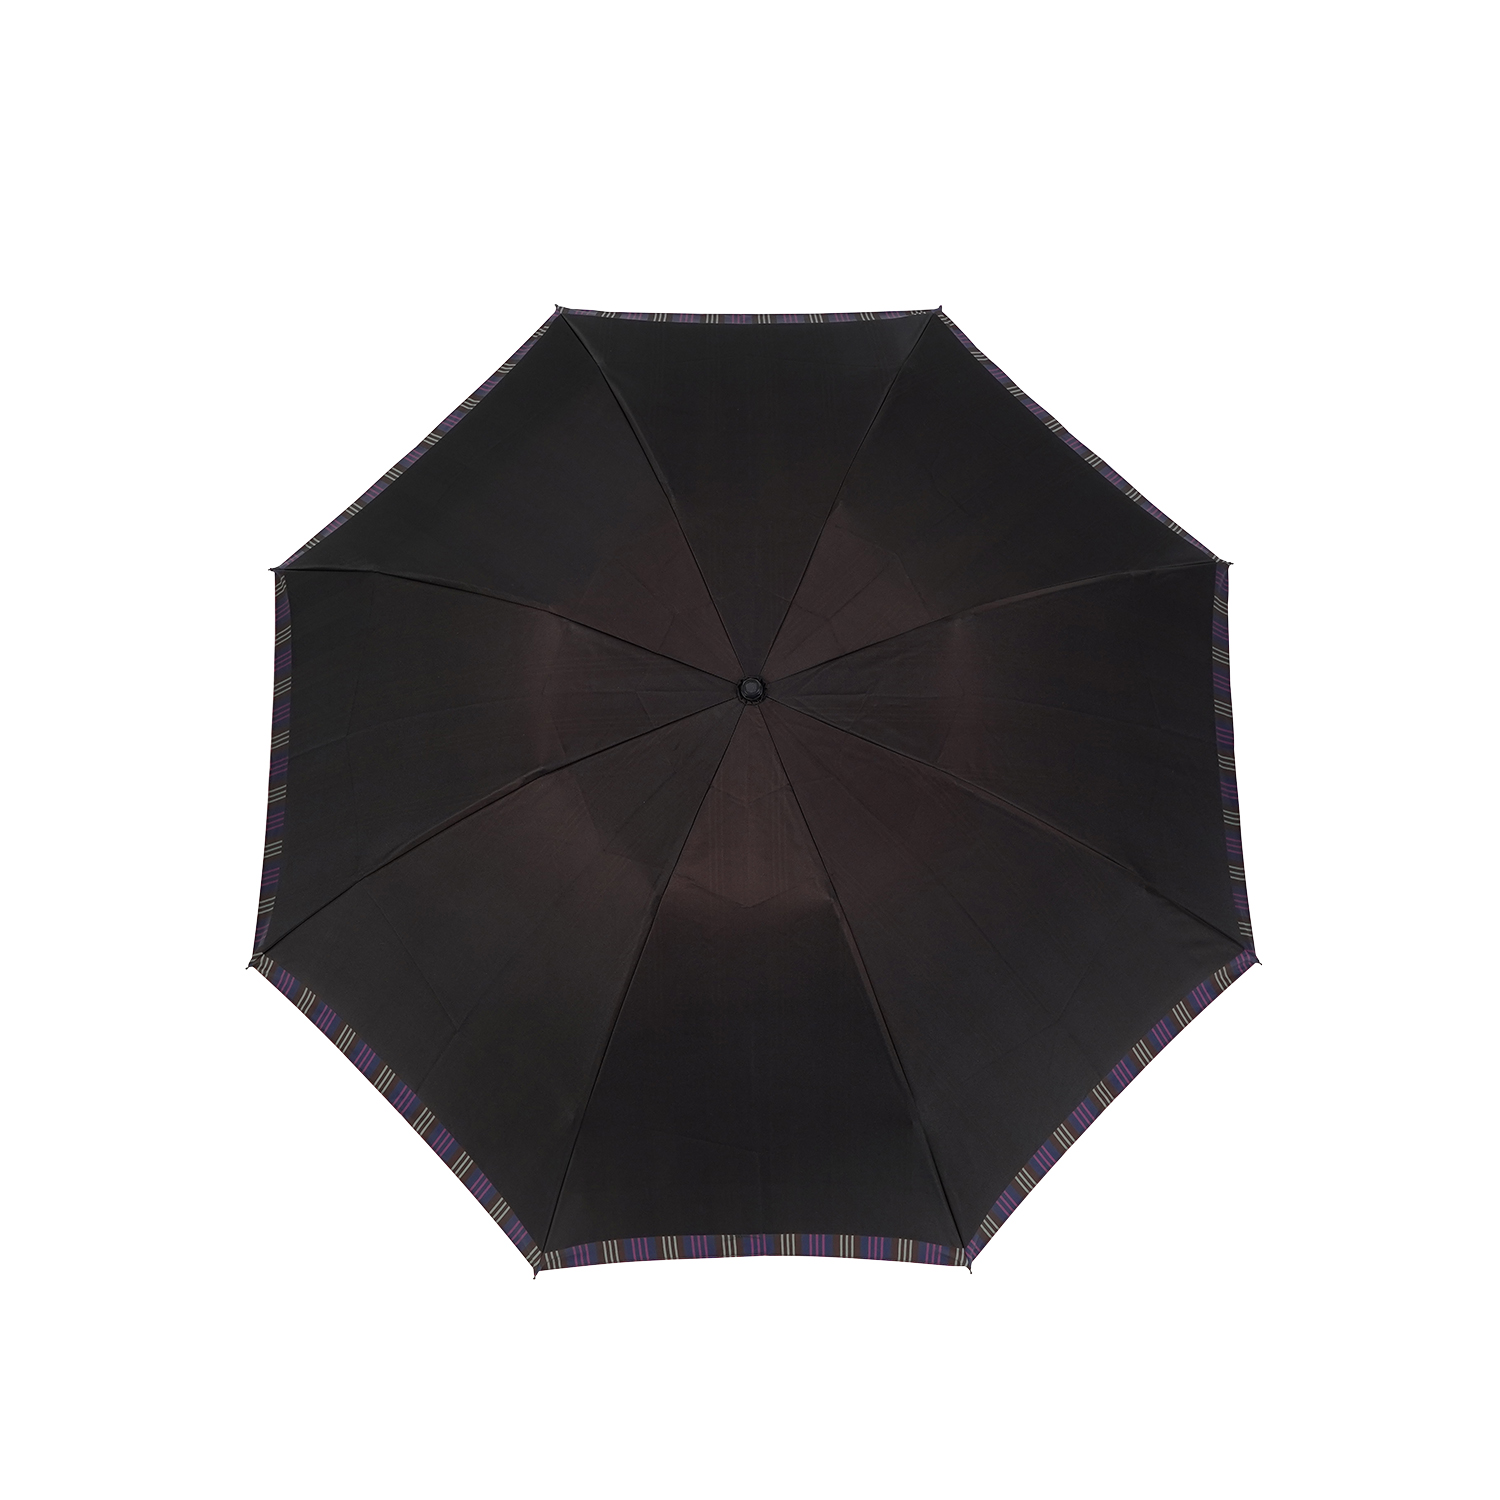 槙田商店 マキタショウテン 日傘 折りたたみ 晴雨兼用 雨傘 メンズ 軽量 60cm UVカット